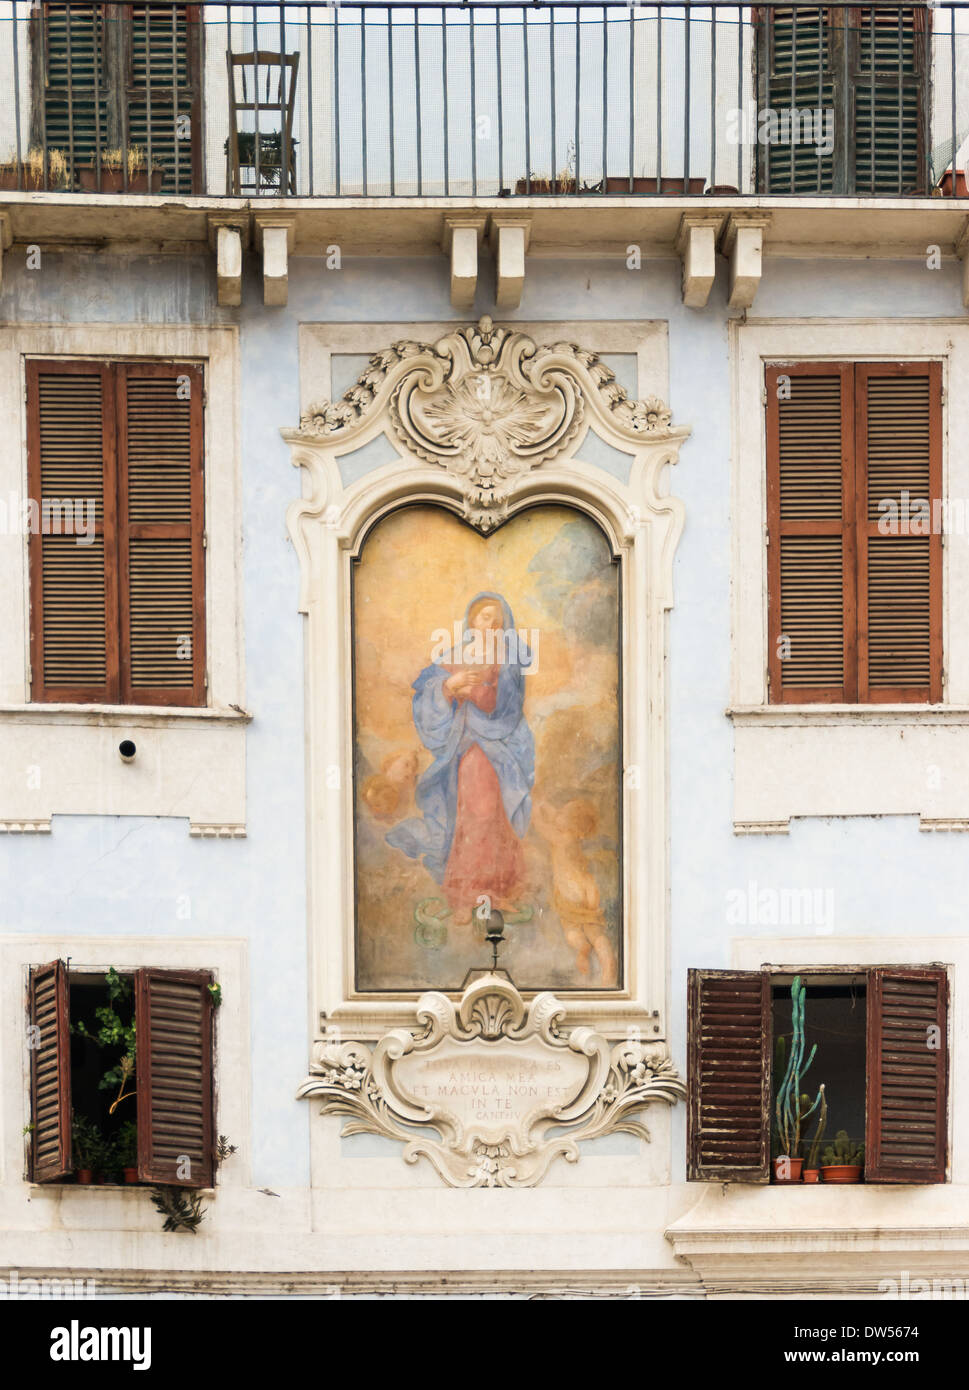 Dettaglio di una facciata affresco della Vergine Maria e il serpente, piazza della Rotonda, Roma, Italia. Foto Stock